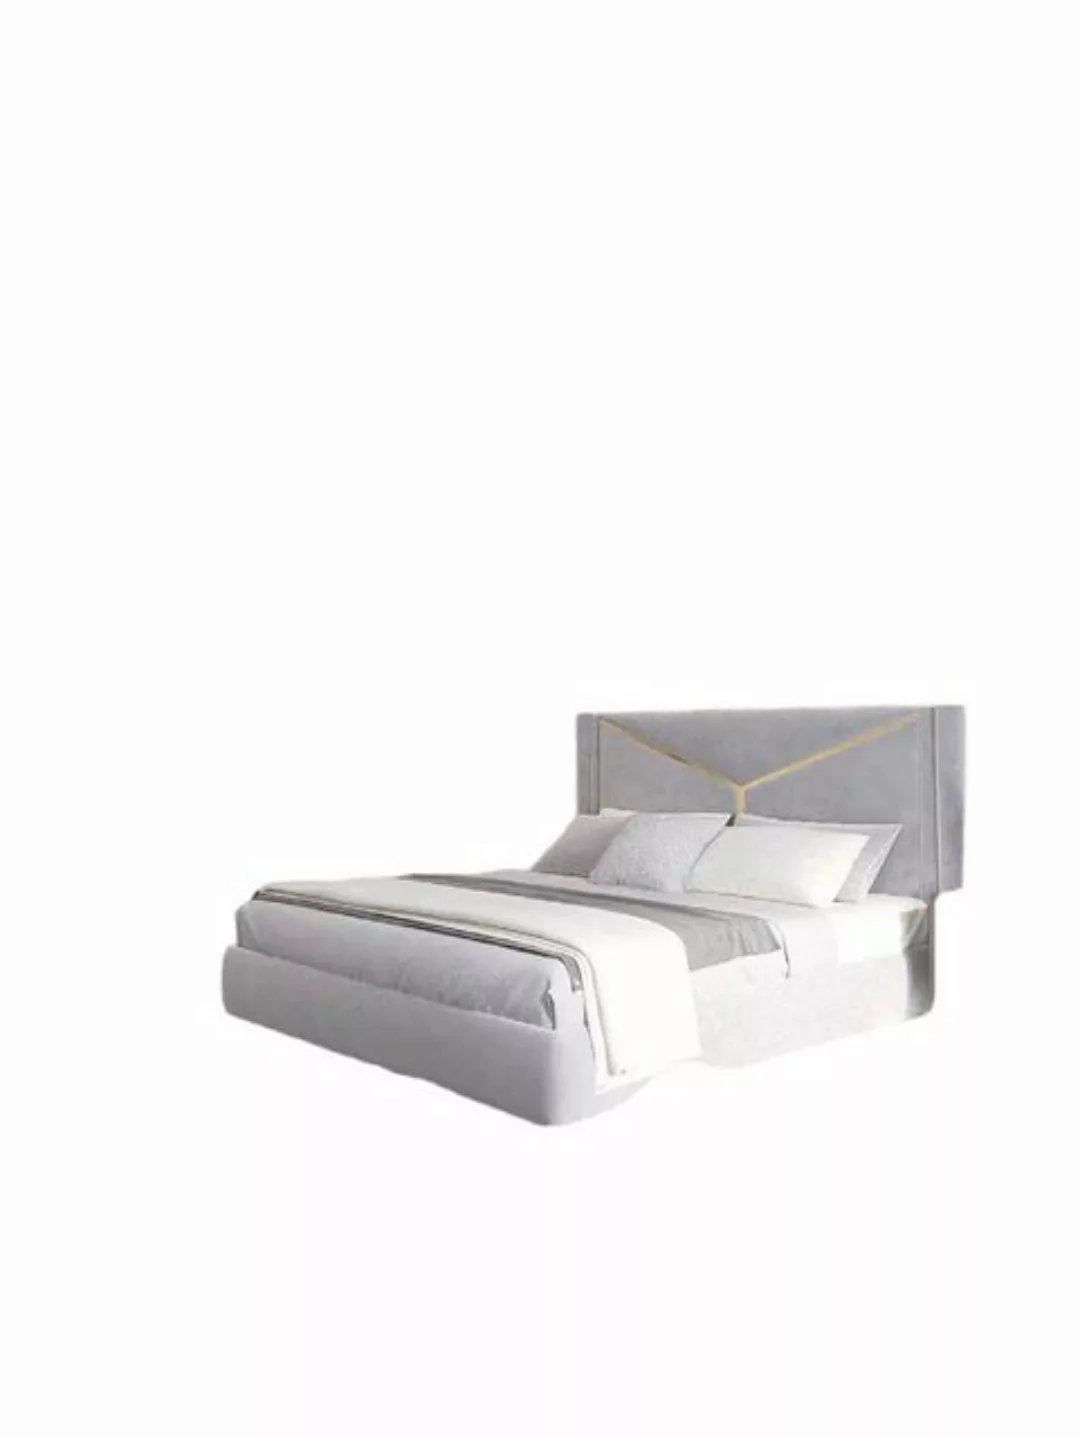 JVmoebel Bett Luxus Bett Polster Schlafzimmer Möbel Neu Weiß Bett Design (1 günstig online kaufen